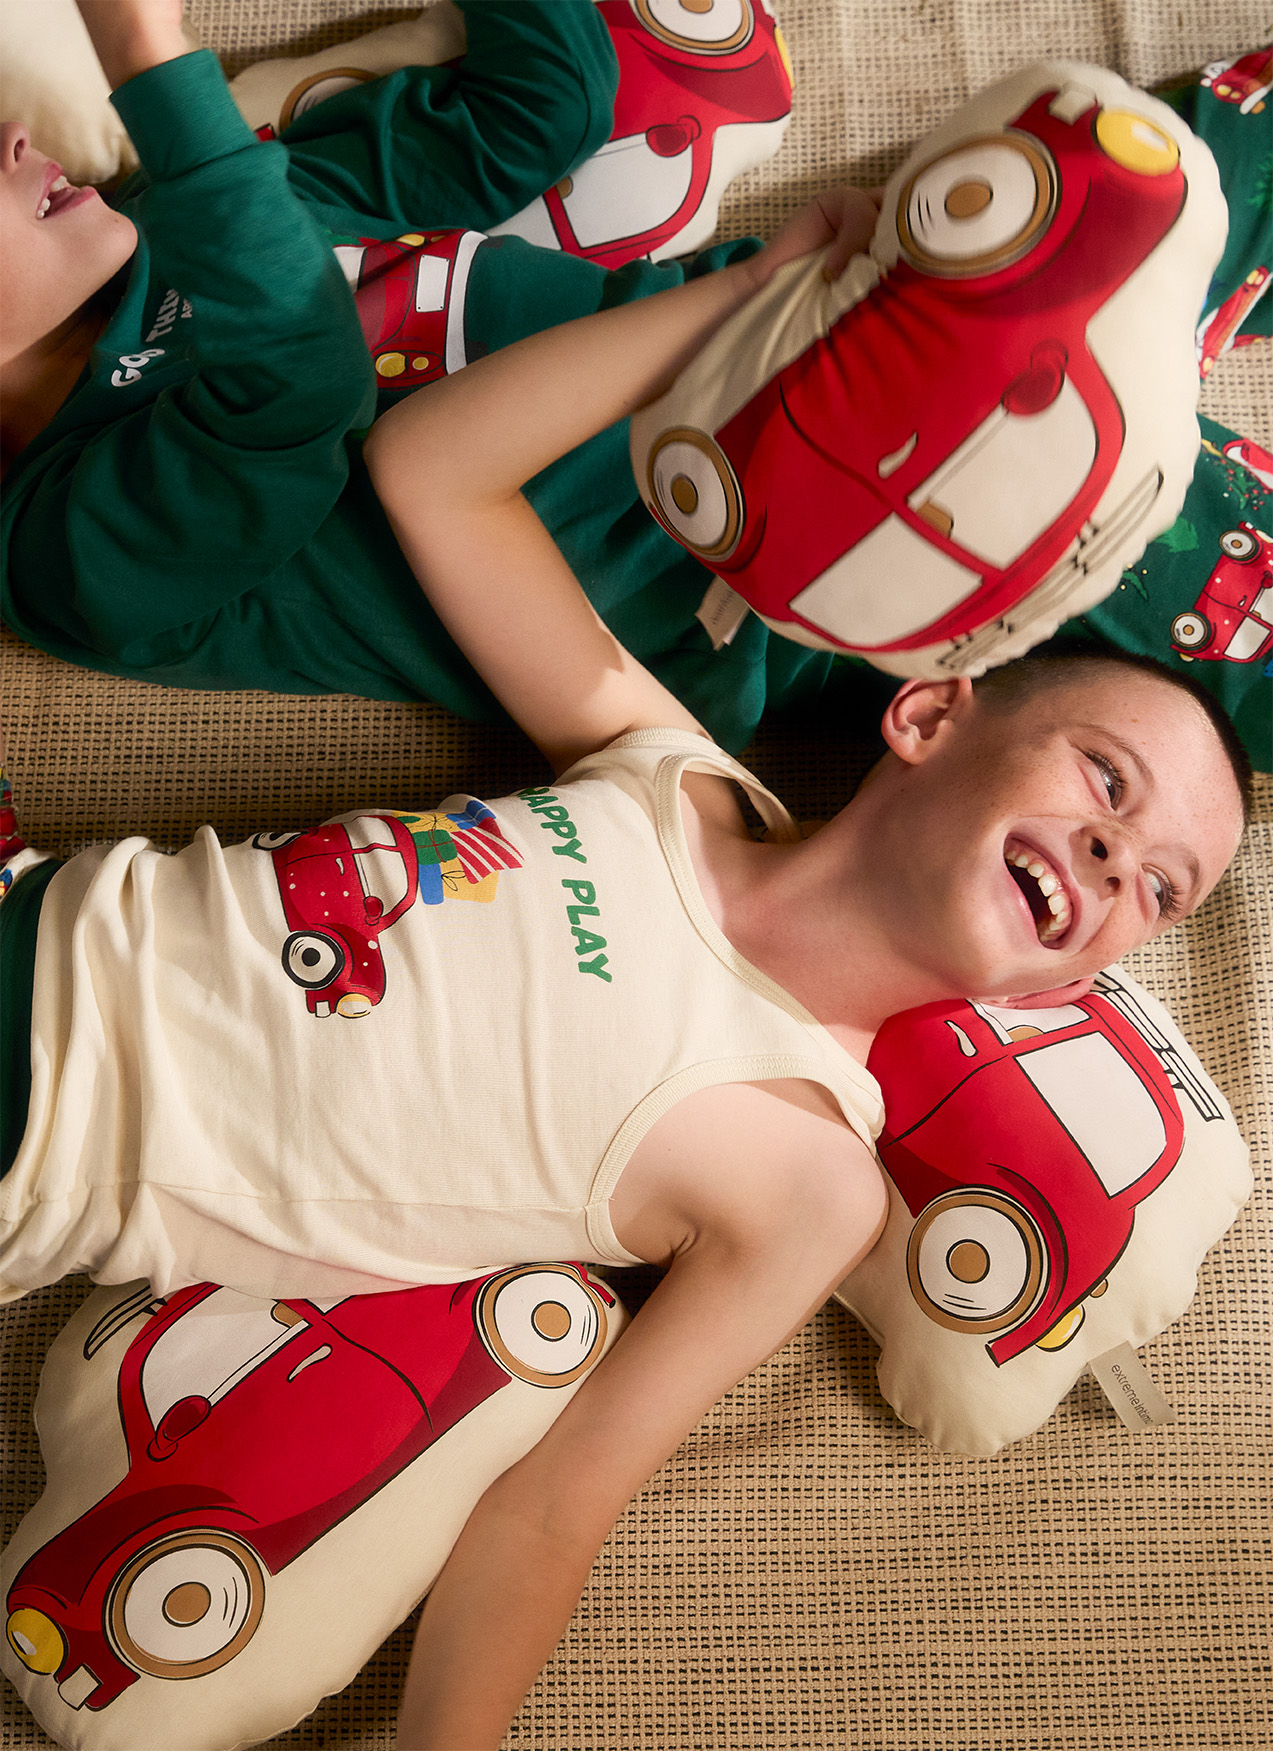 Dječaci leže na podu obučeni u novogodišnje artikle  i drze novogodišnji jastuk u obliku auta